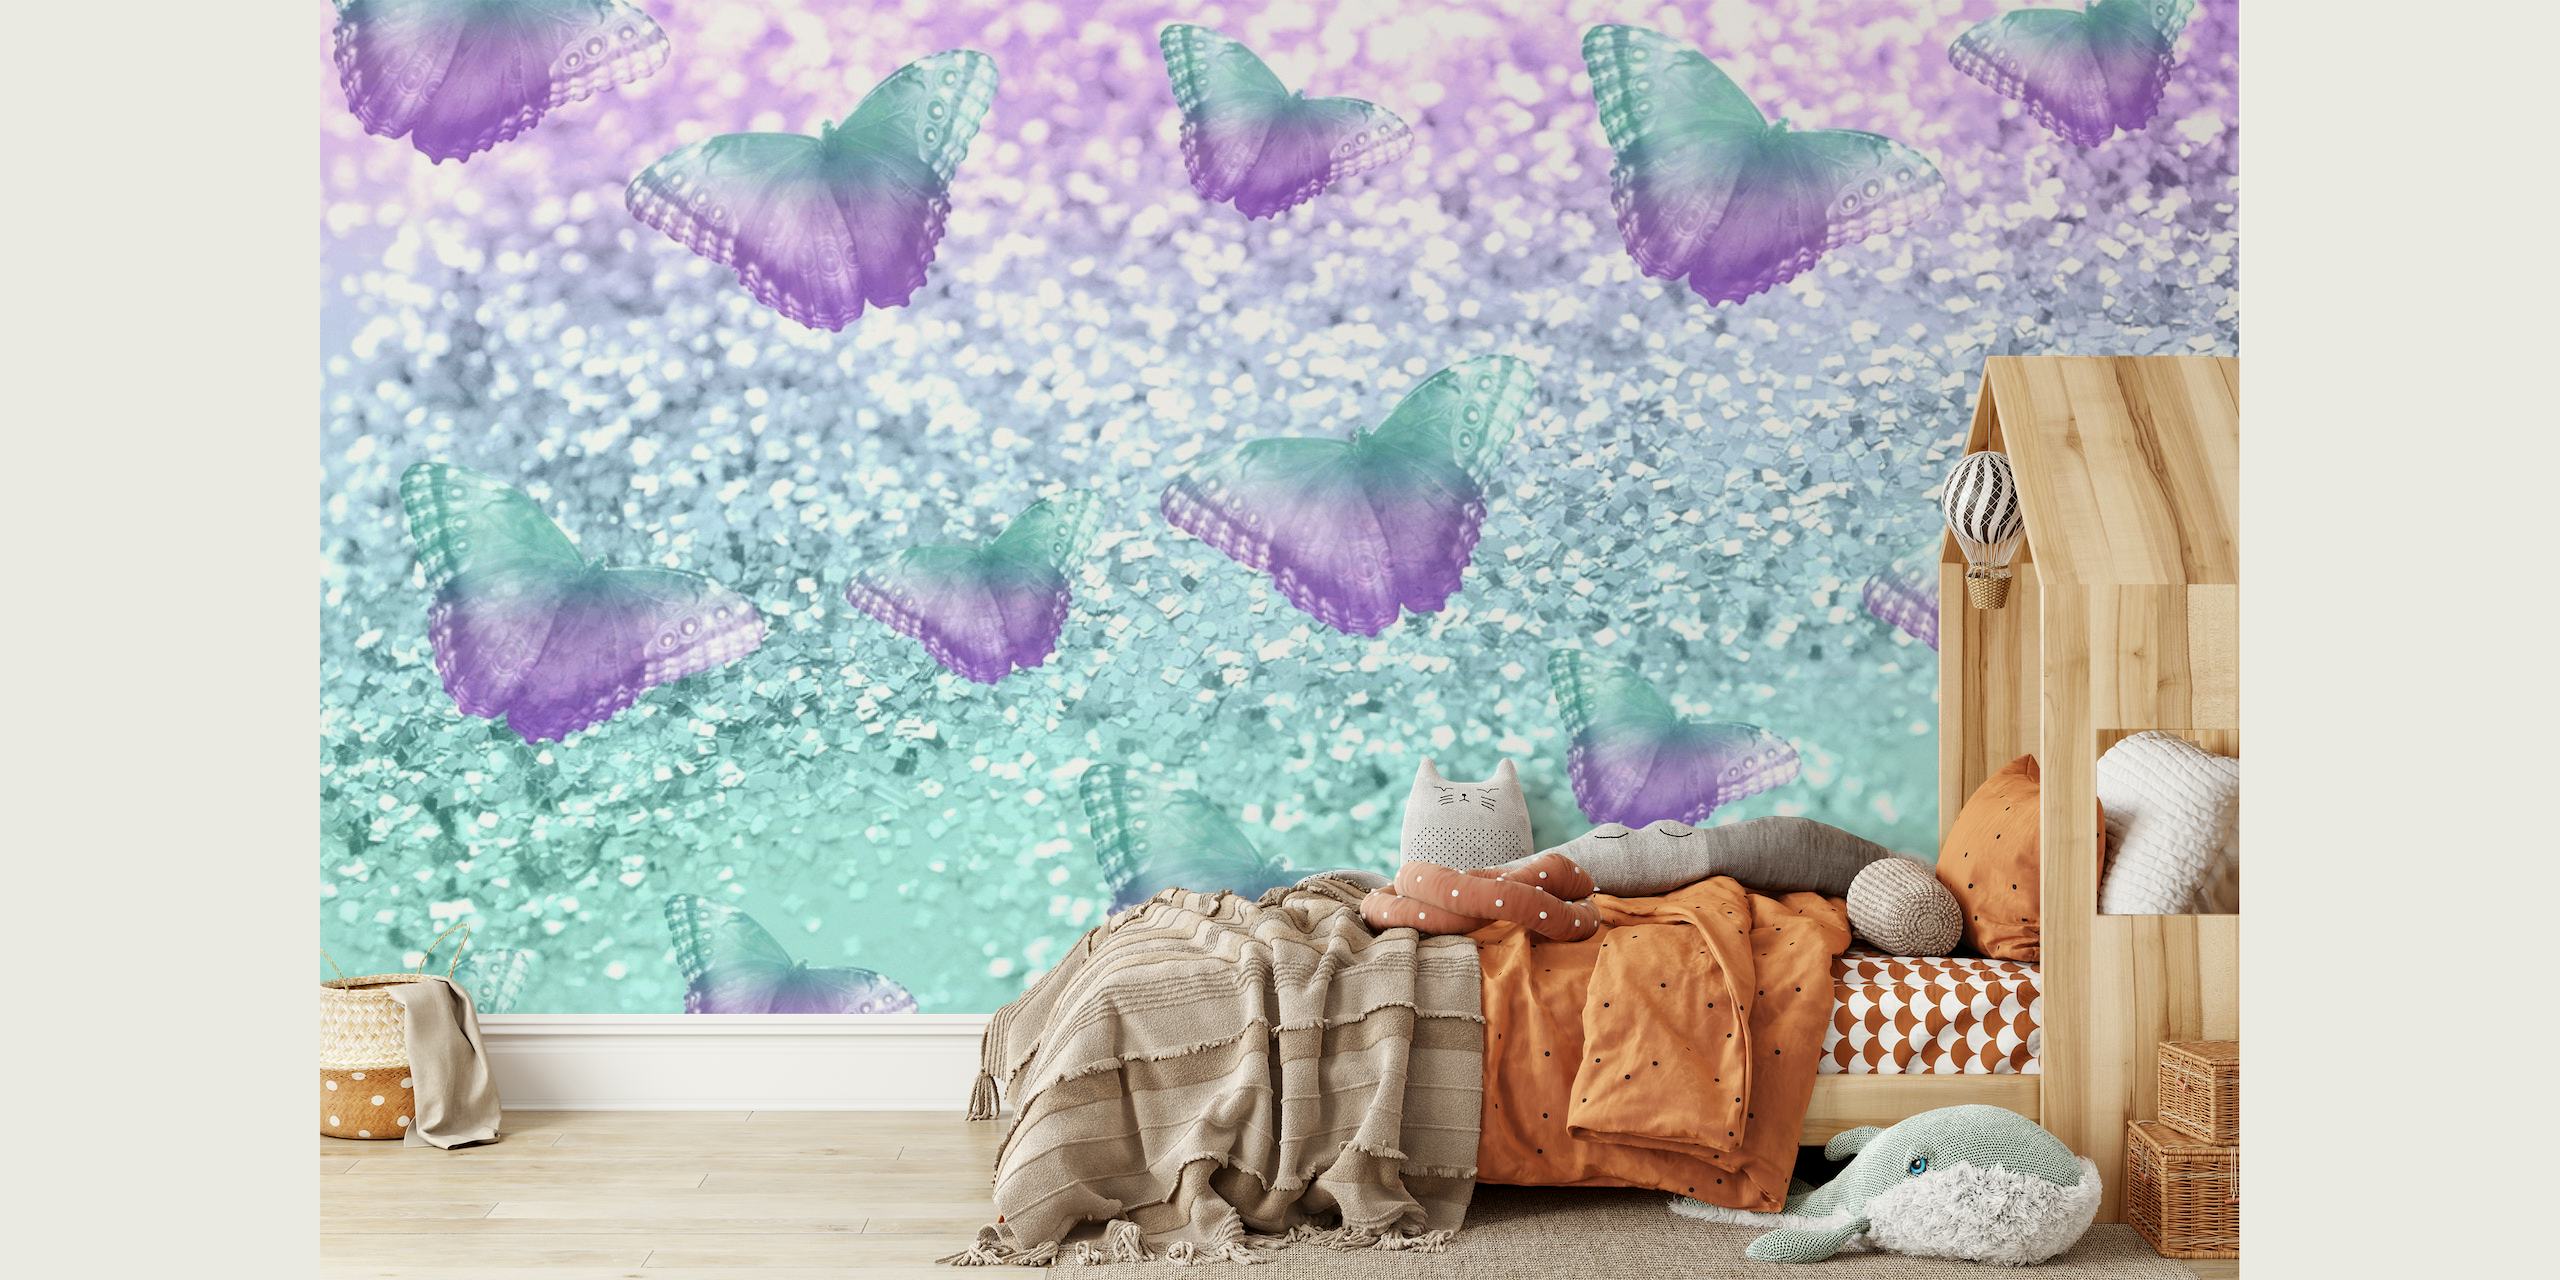 Mermaid Butterfly Glitter 2 seinämaalaus perhosilla ja kimaltelevalla vedenalaisella teemalla